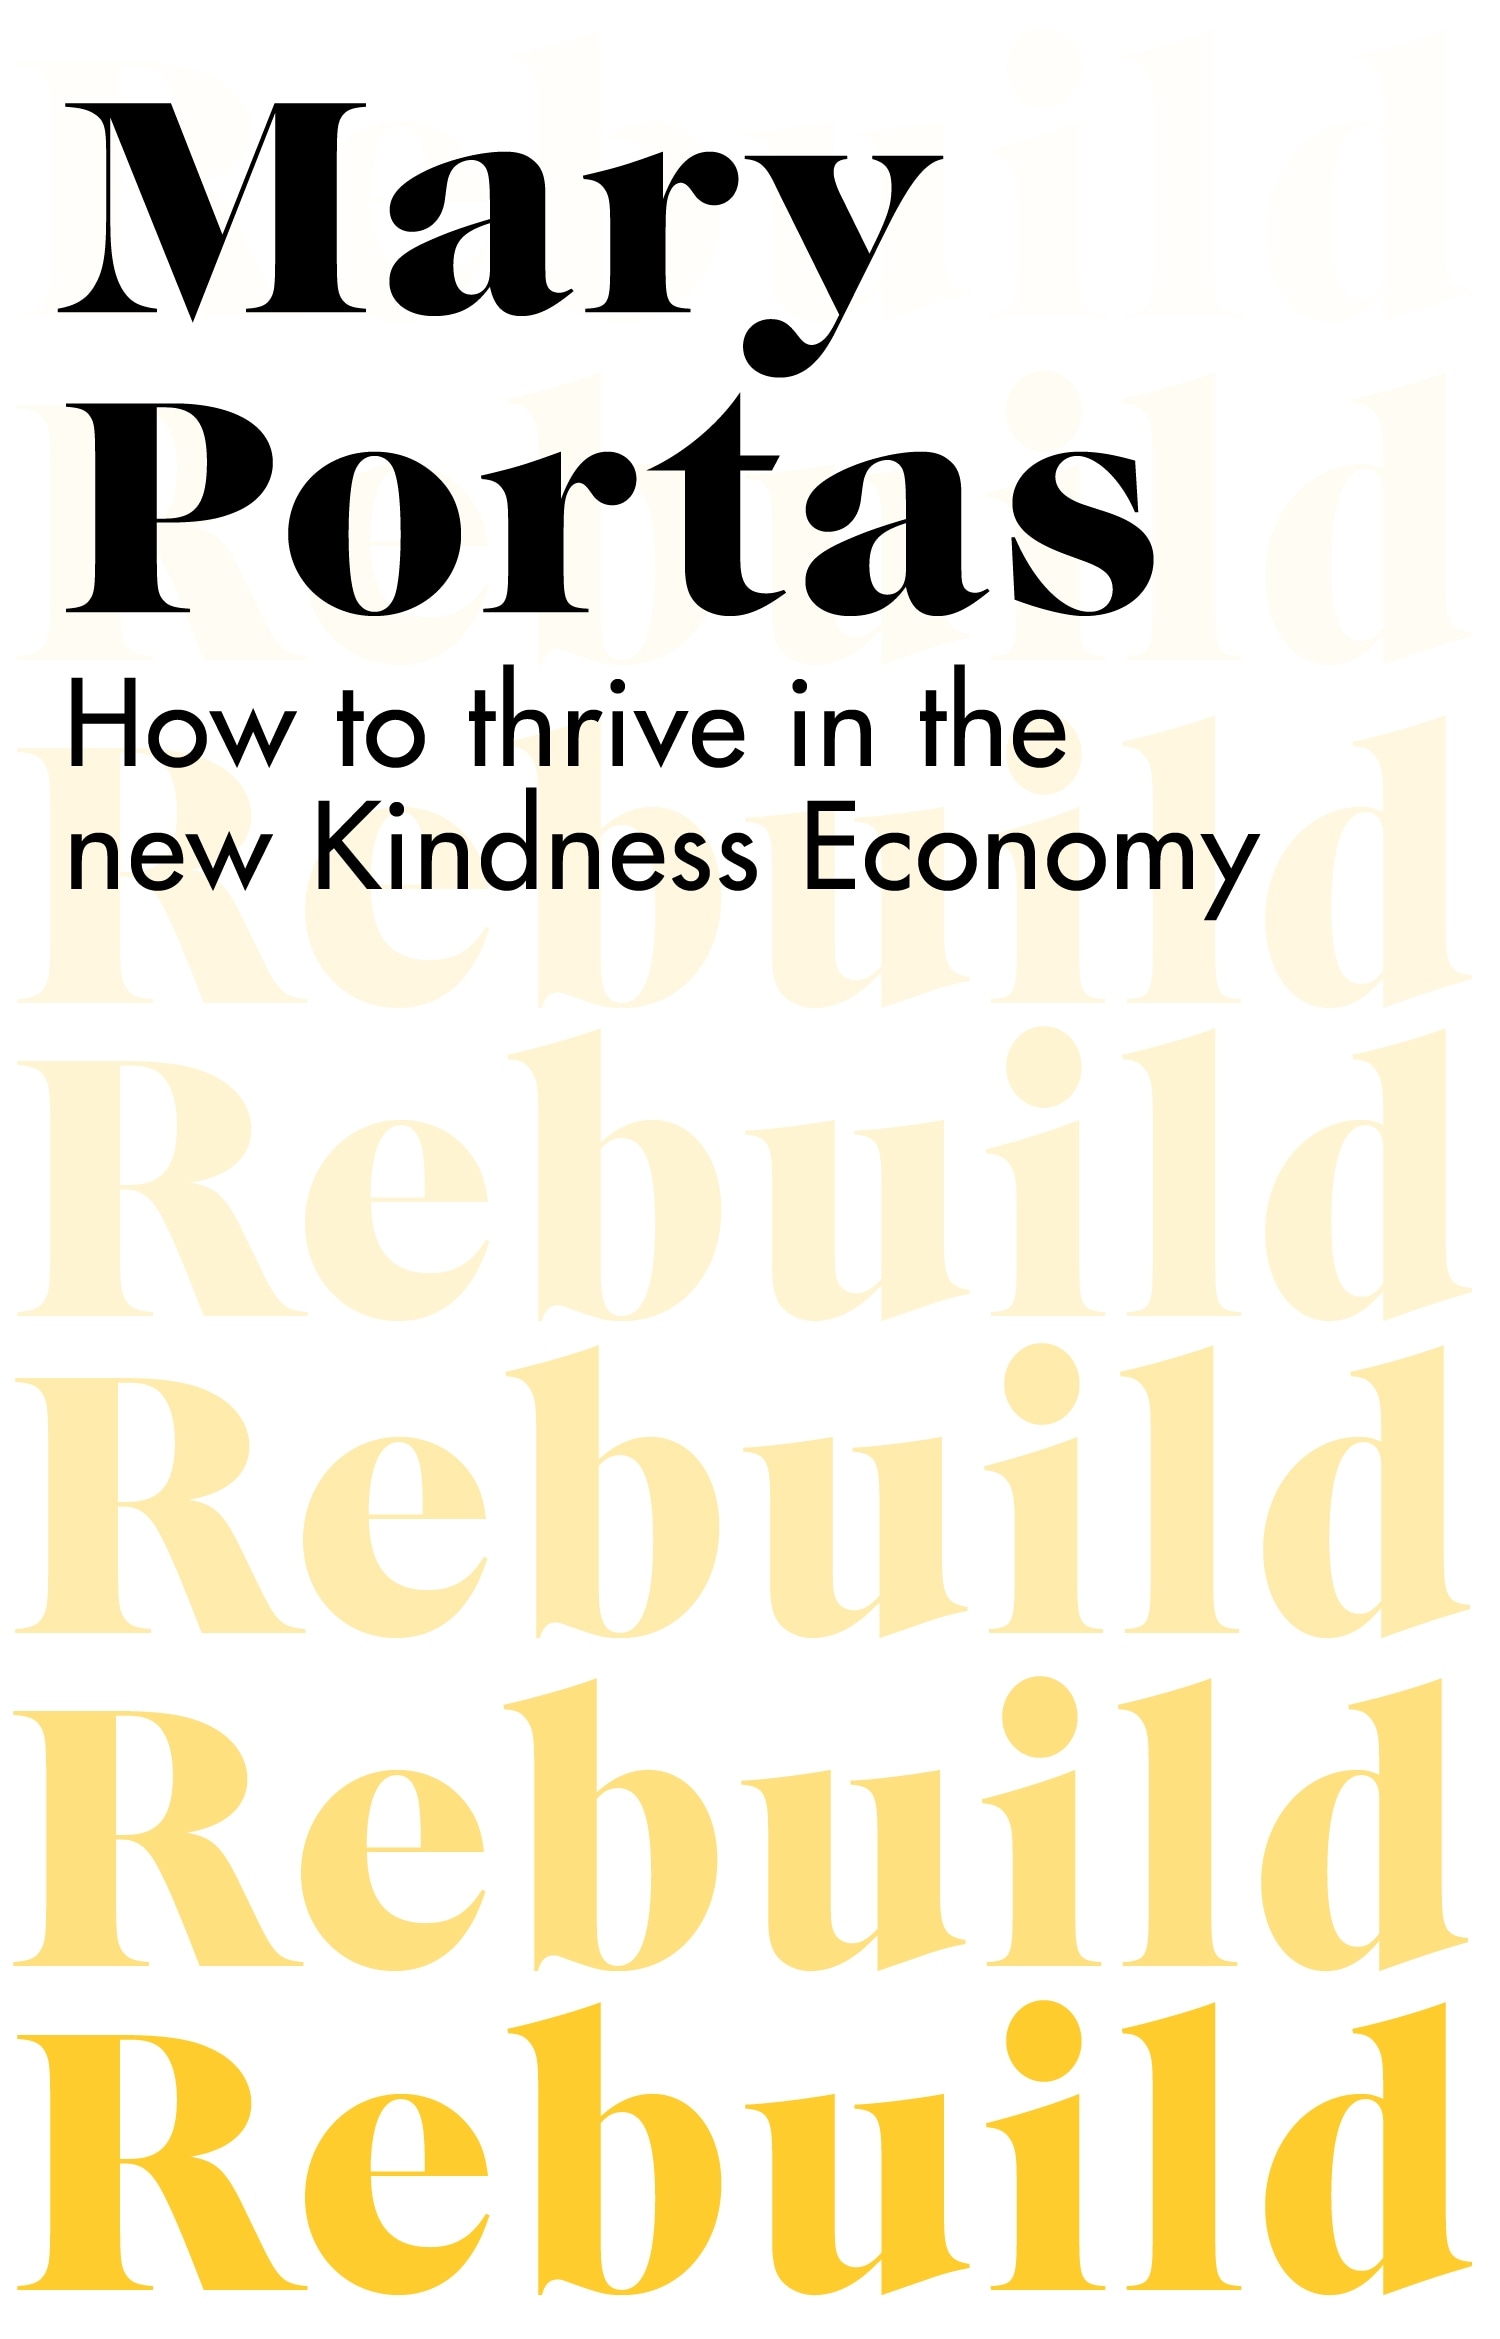 Book “Rebuild” by Mary Portas — July 1, 2021